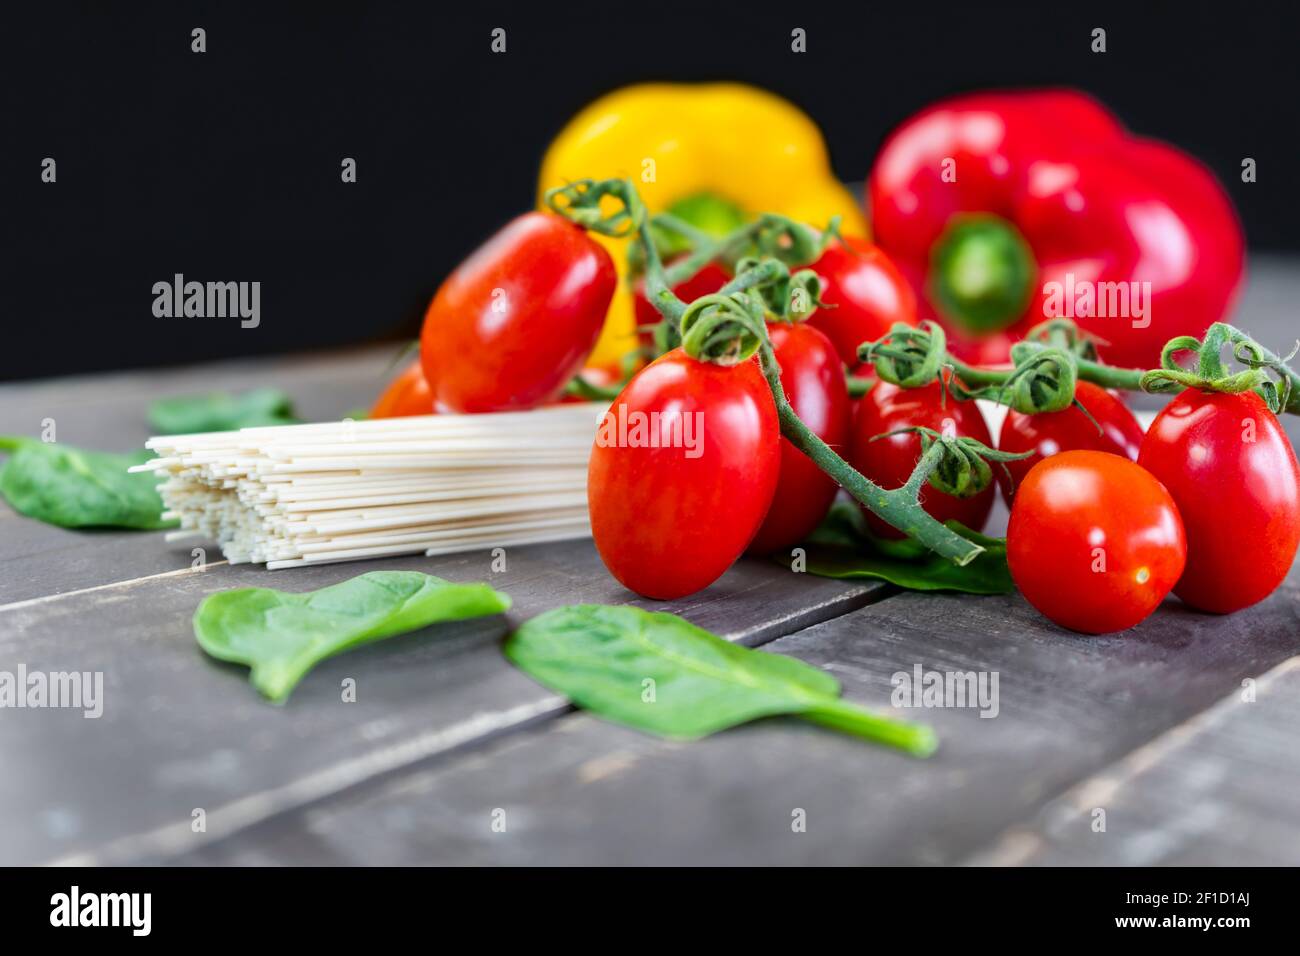 Vue rapprochée de légumes frais biologiques avec pâtes crues sur table en bois.tomates cerises, feuilles d'épinards et poivrons colorés sur fond sombre. Banque D'Images